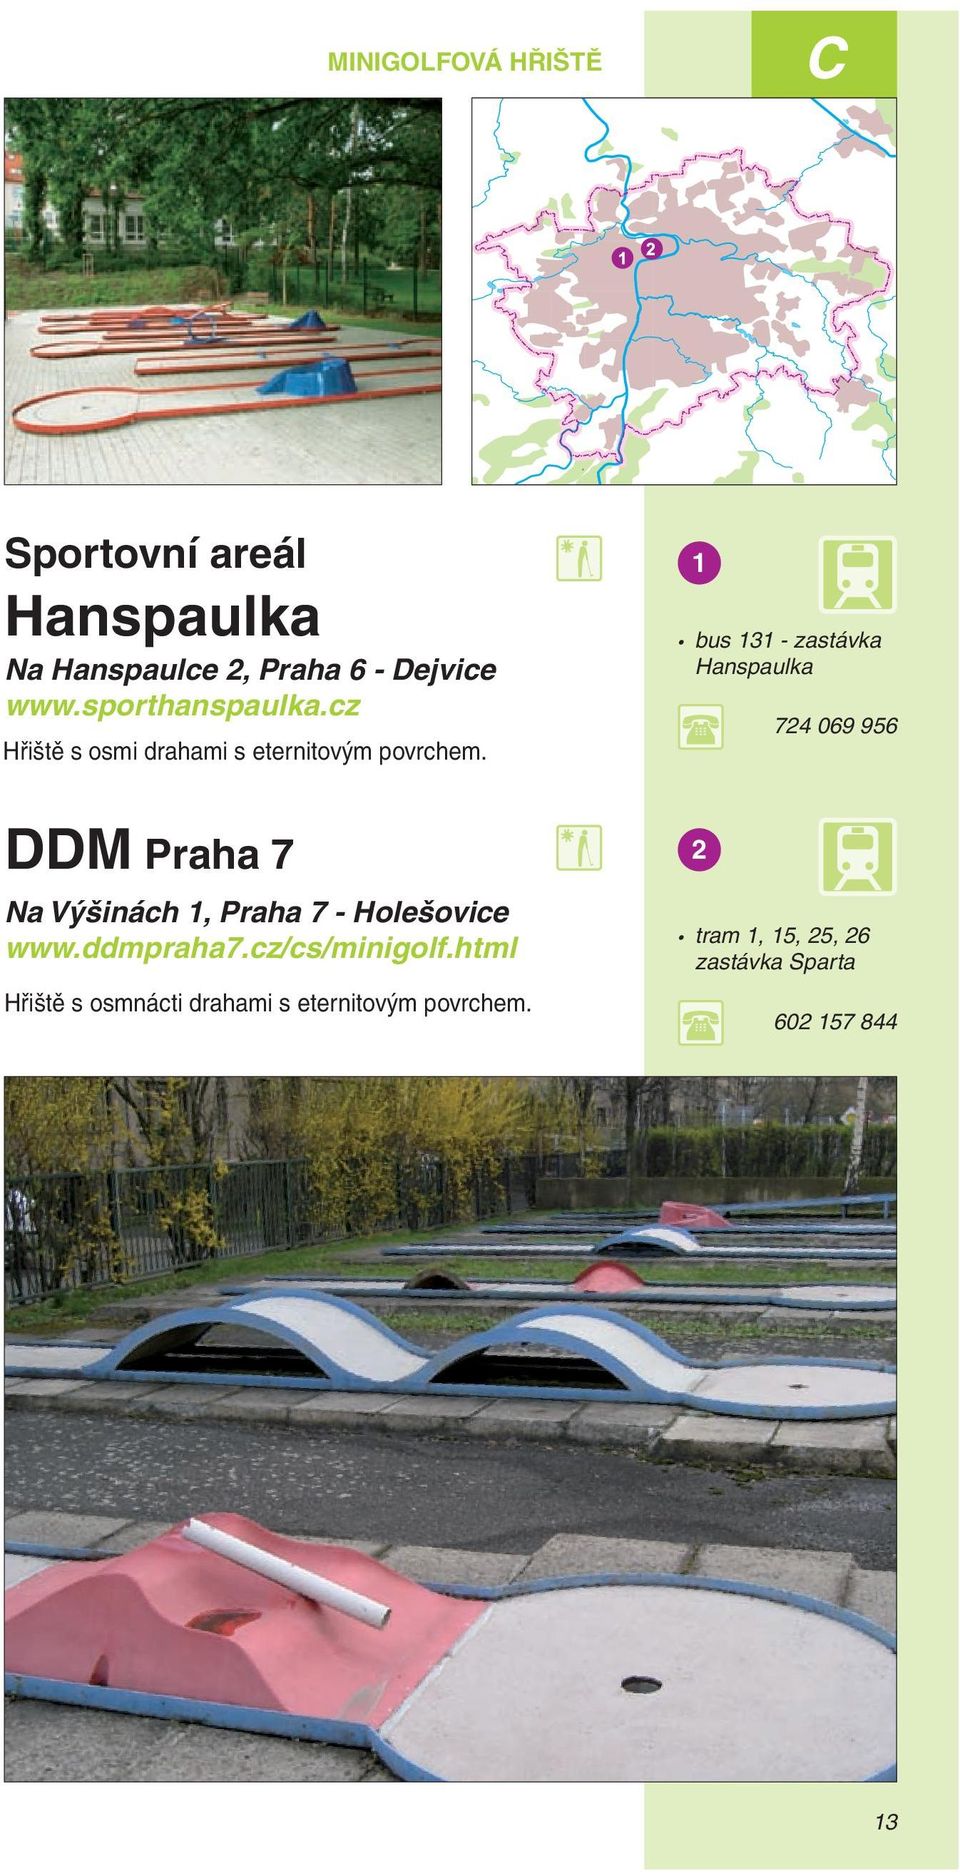 1 bus 131 - zastávka Hanspaulka 724 069 956 DDM Praha 7 Na Výšinách 1, Praha 7 - Holešovice